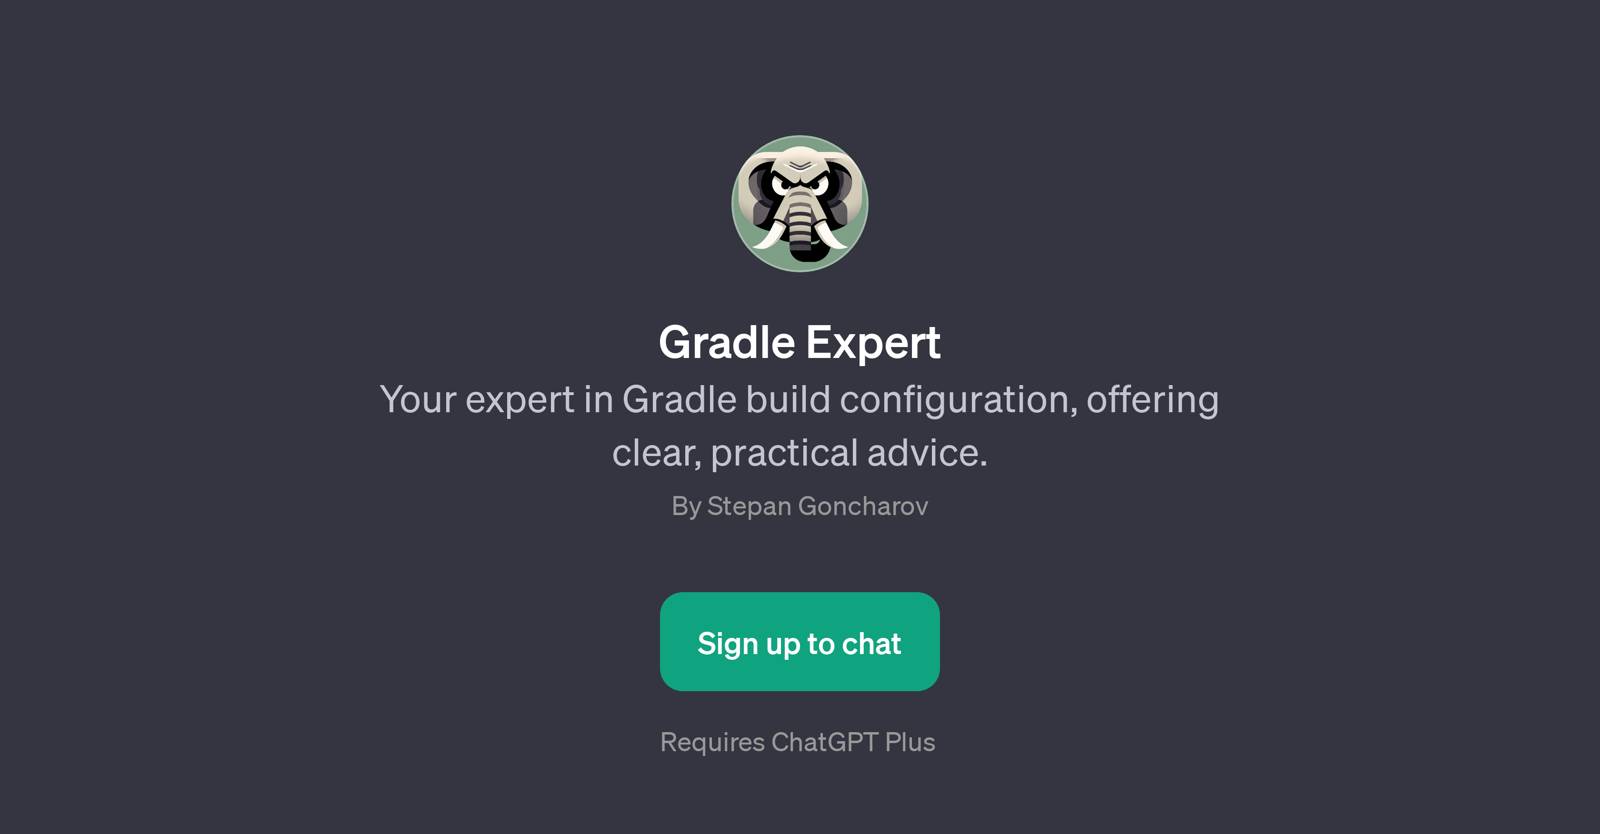 Gradle Expert website